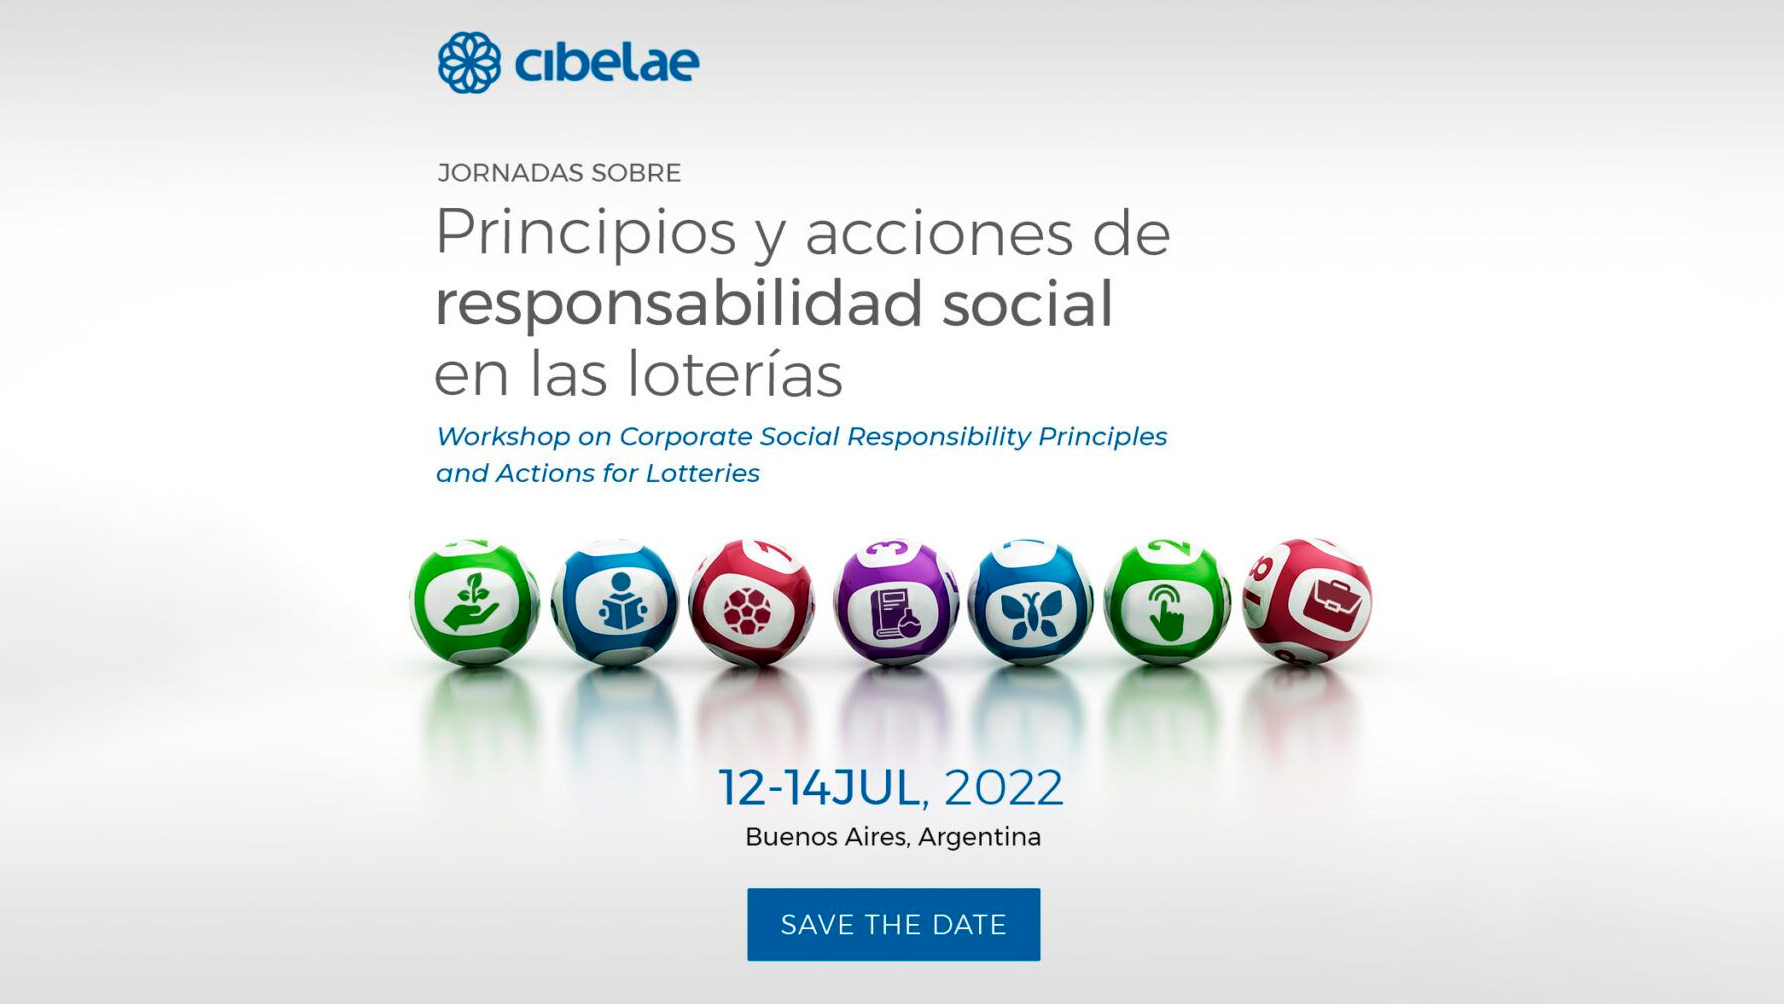 Cibelae reinicia sus eventos presenciales y organiza jornadas sobre responsabilidad social en las loterías